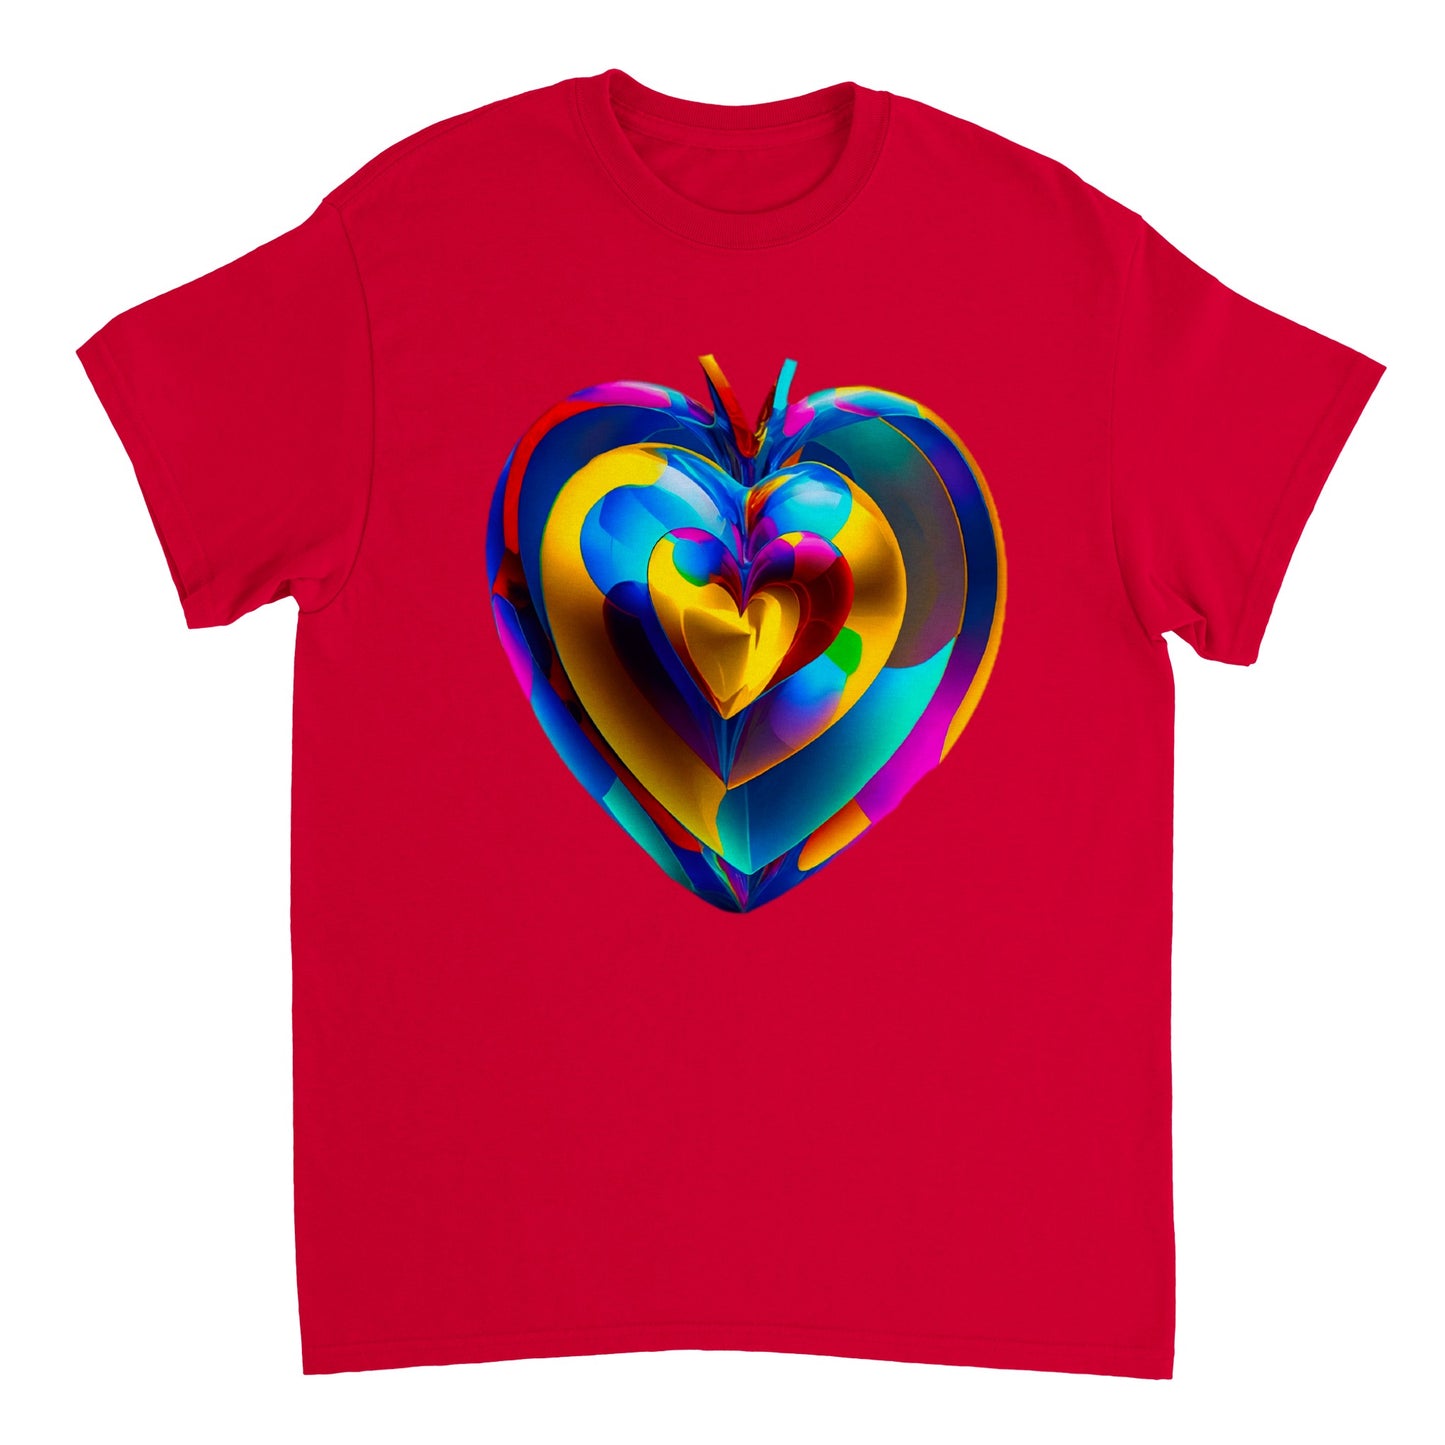 Love Heart - Heavyweight Unisex Crewneck T-shirt 85